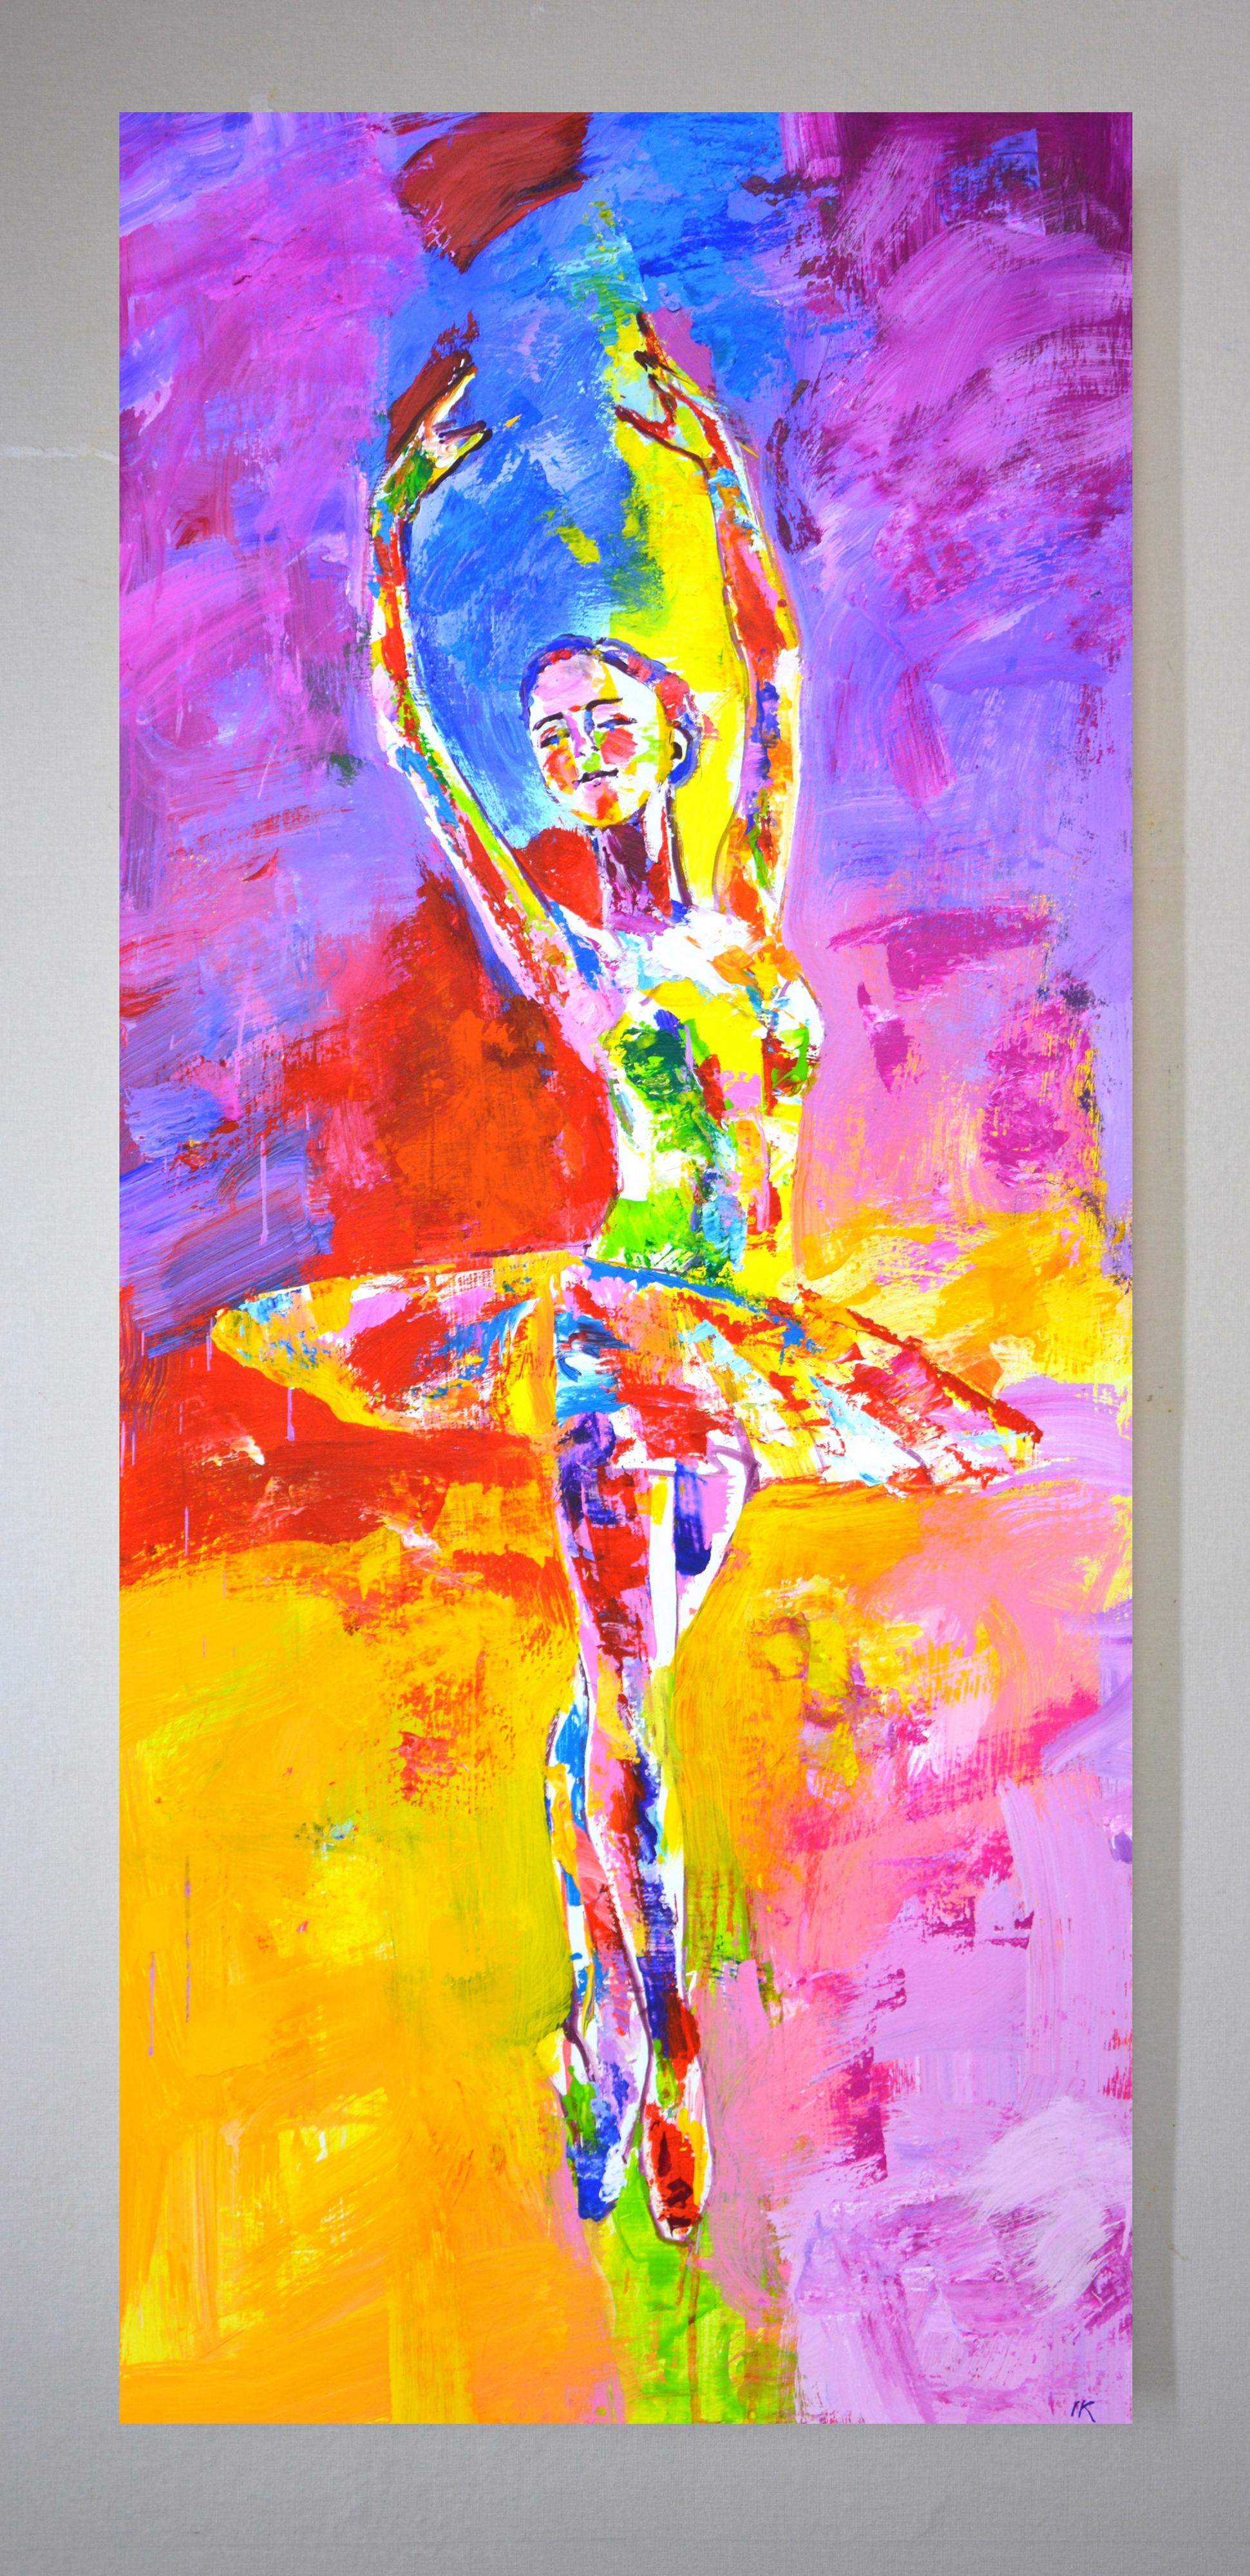 Ballerina 3. - Painting by Iryna Kastsova